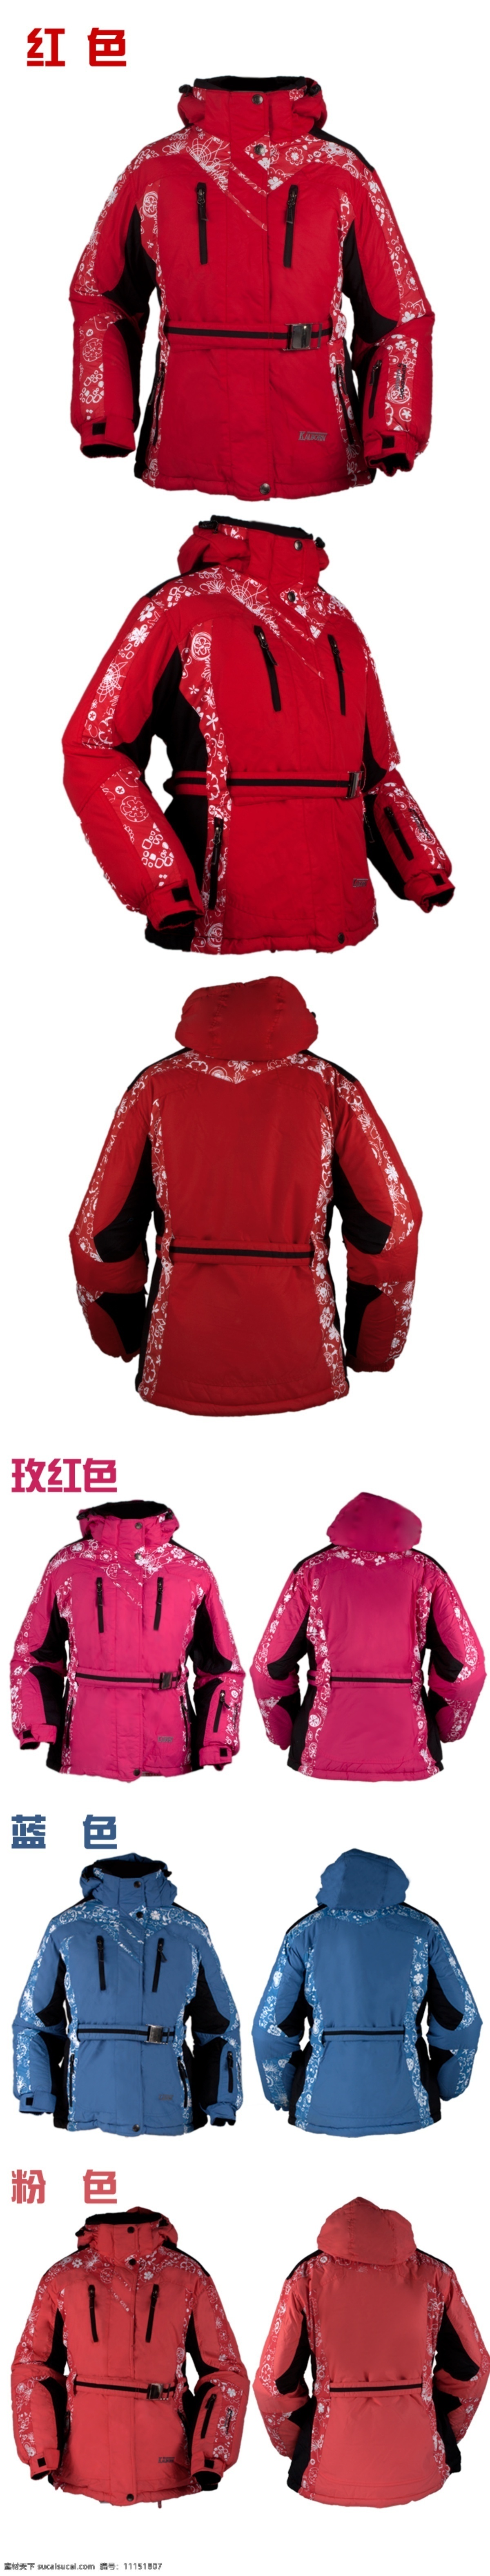 滑雪服 宝贝 描述 宝贝展示 滑雪衣 冲锋衣 棉衣 描述信息 中文模板 网页模板 源文件